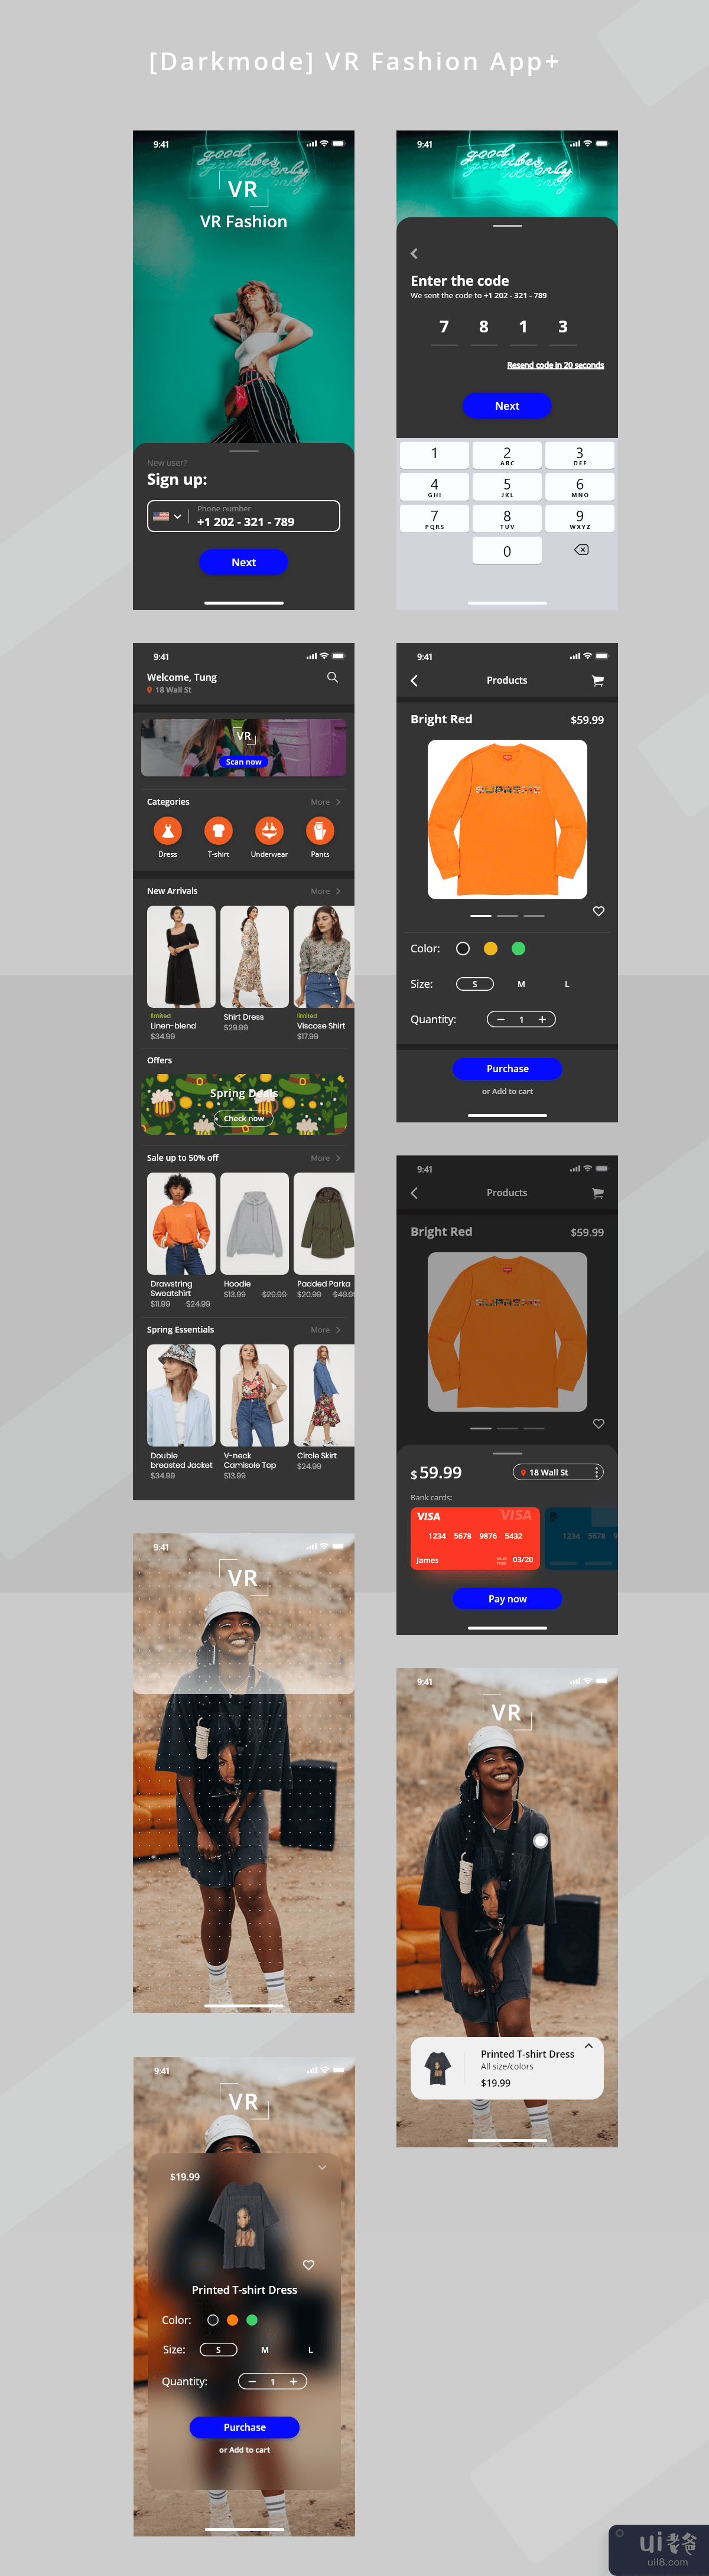 [Darkmode] VR时尚应用([Darkmode] VR Fashion App)插图